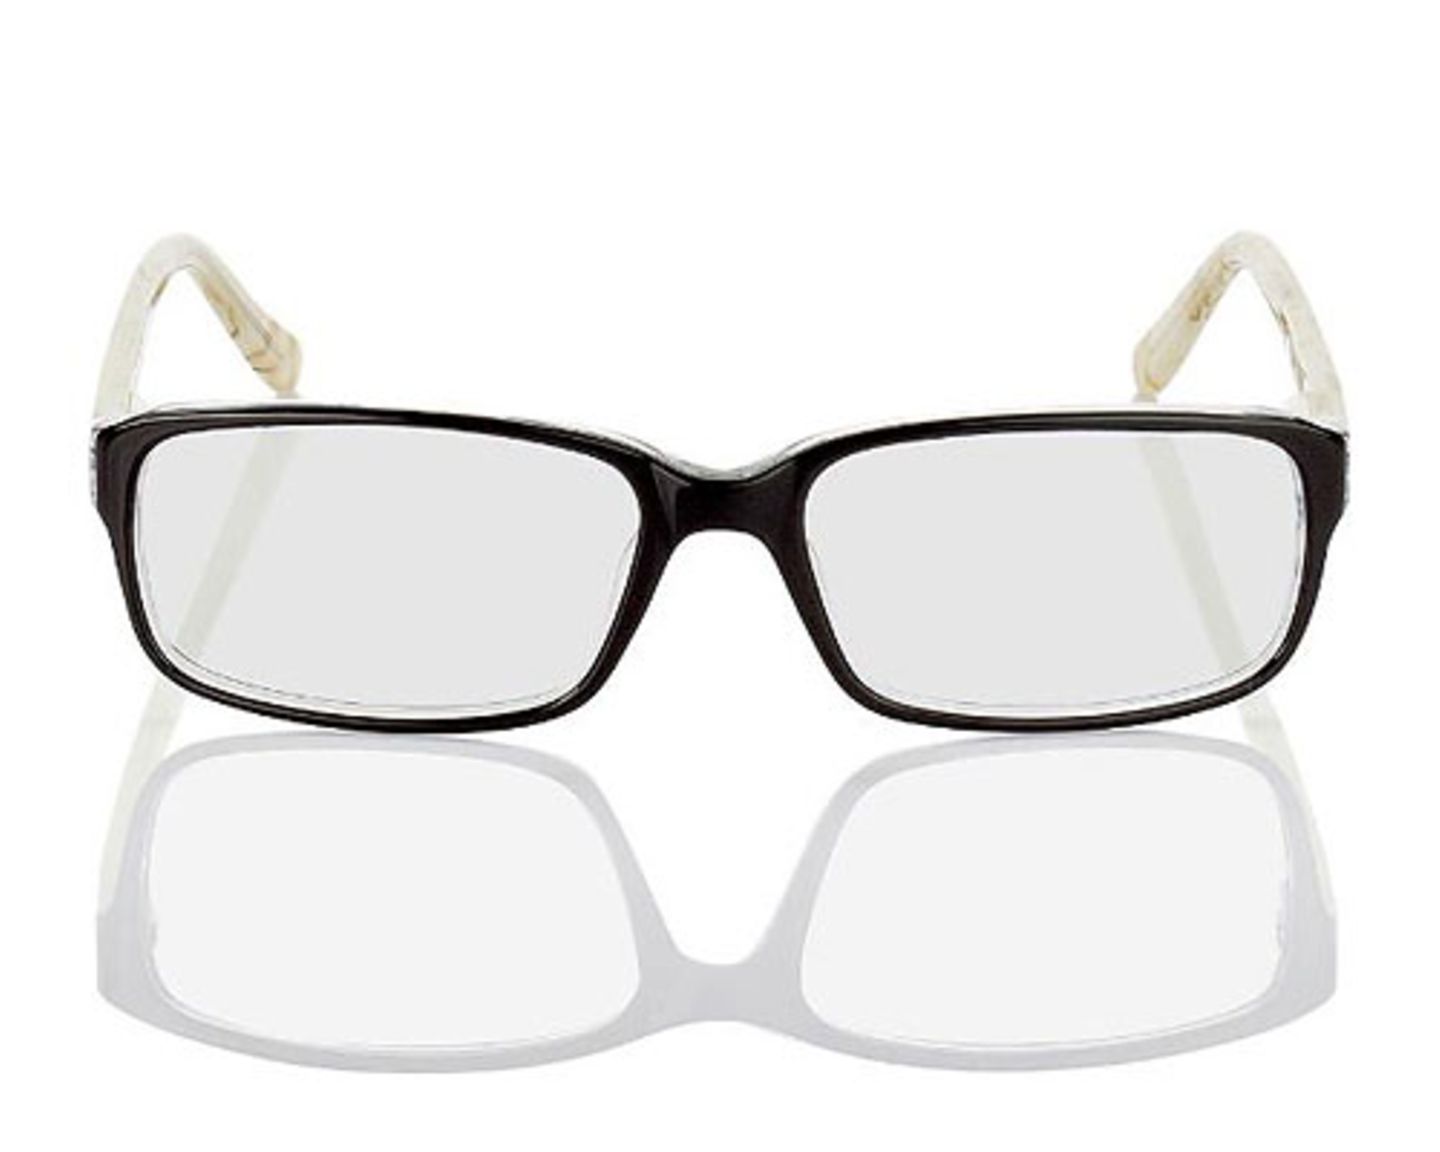 Brille schwarz transparente Bügel